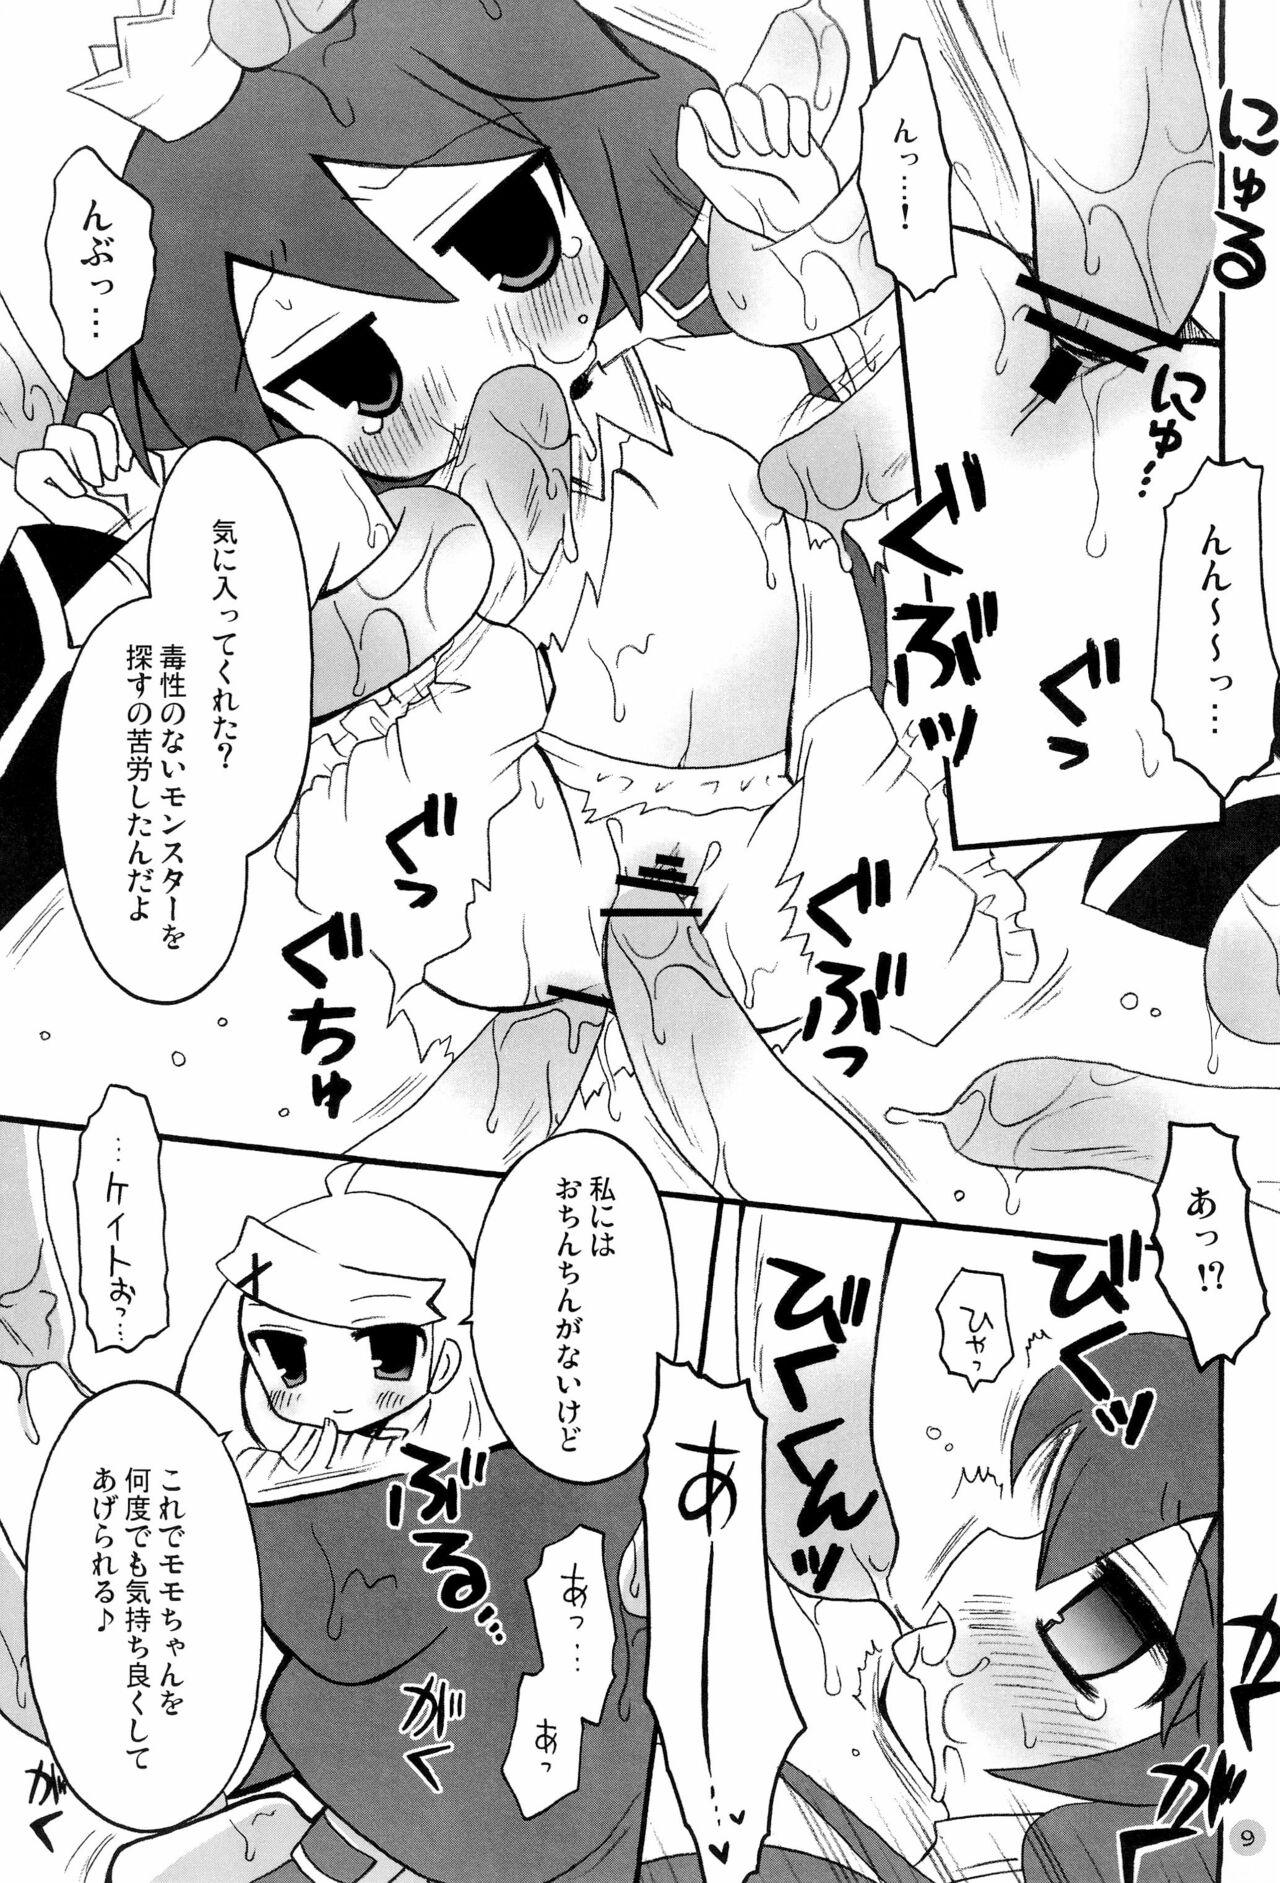 Blacks Harumomo no Tsubomi - 7th dragon Sex - Page 9